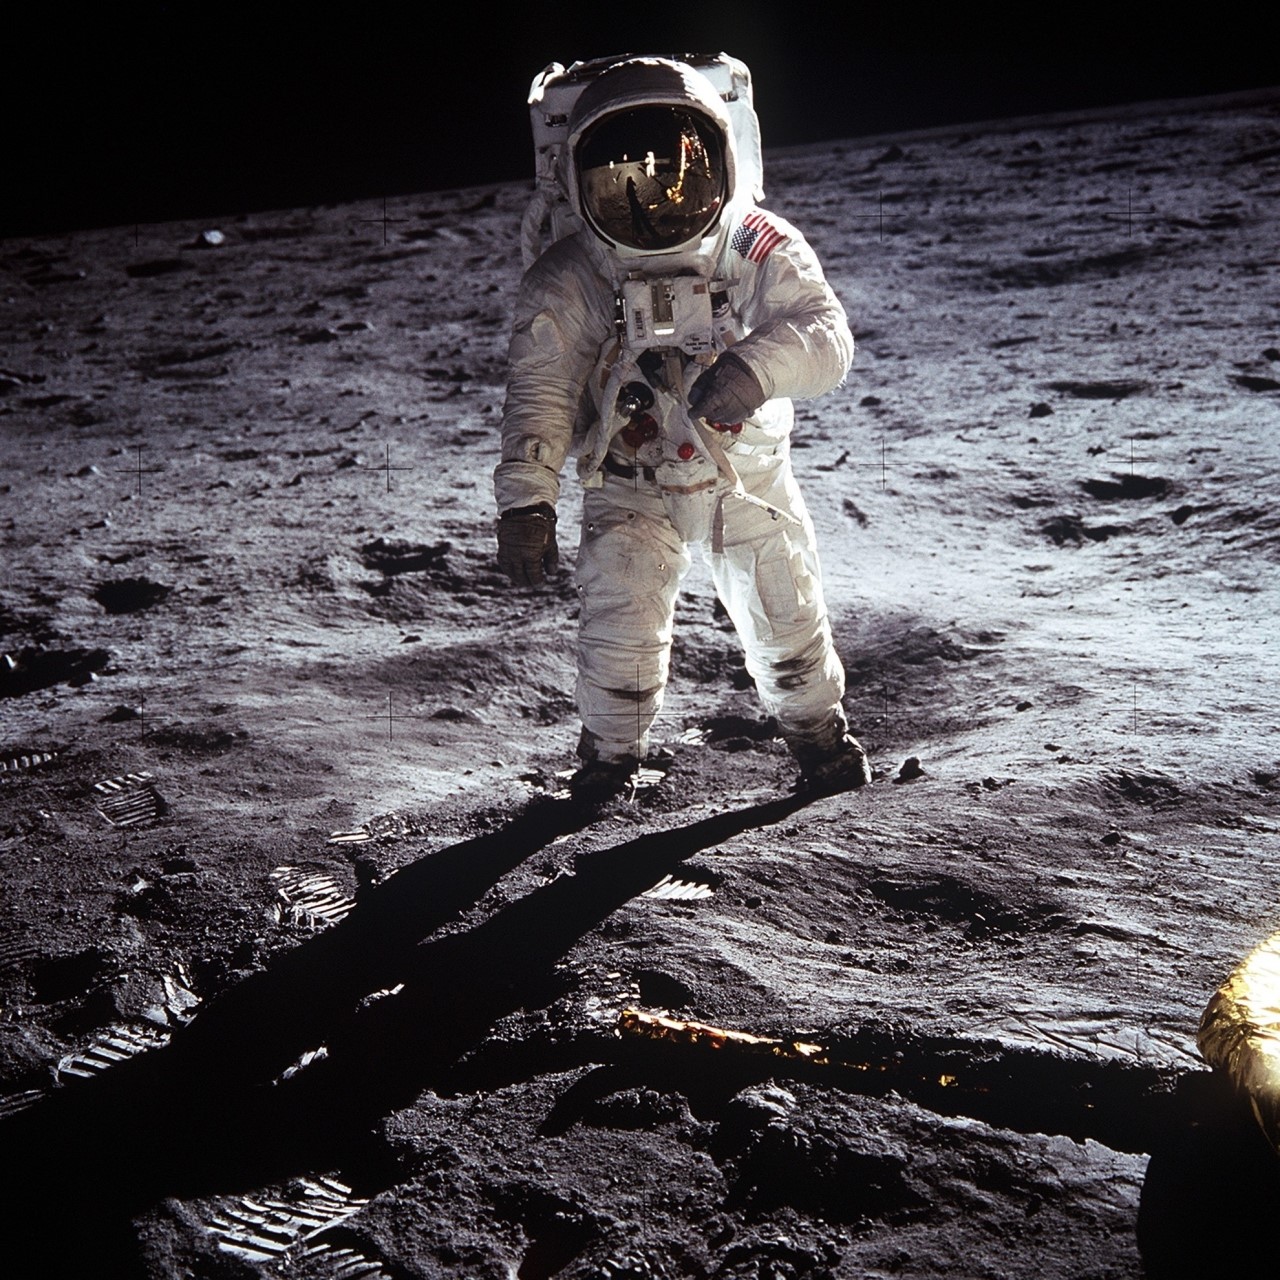 달 탐사 소련에게 우주개발과 관련한 모든 ‘인류 최초’ 타이틀을 빼앗긴 미국은 인간을 최초로 달에 보내는 아폴로 계획에 박차를 가하여 마침내 인류 최초로 달에 사람을 착륙시키는 데 성공한다. 미국은 아폴로 계획에 앞서 달 표면을 근접 촬영하는 ‘레인저 계획’, 달 지도를 제작하는 ‘루나 오비터 계획’, 그리고 달에 연착륙하여 달 표면의 경도 및 조성을 탐사하는 ‘서베이어 계획’을 진행했다. 세 계획 모두 유인 우주선이 안전하게 달 궤도에 도달 및 착륙할 수 있는 기술을 수집하기 위한 것이었다.   닐 암스트롱이 촬영한 올드린의 모습 @NASA